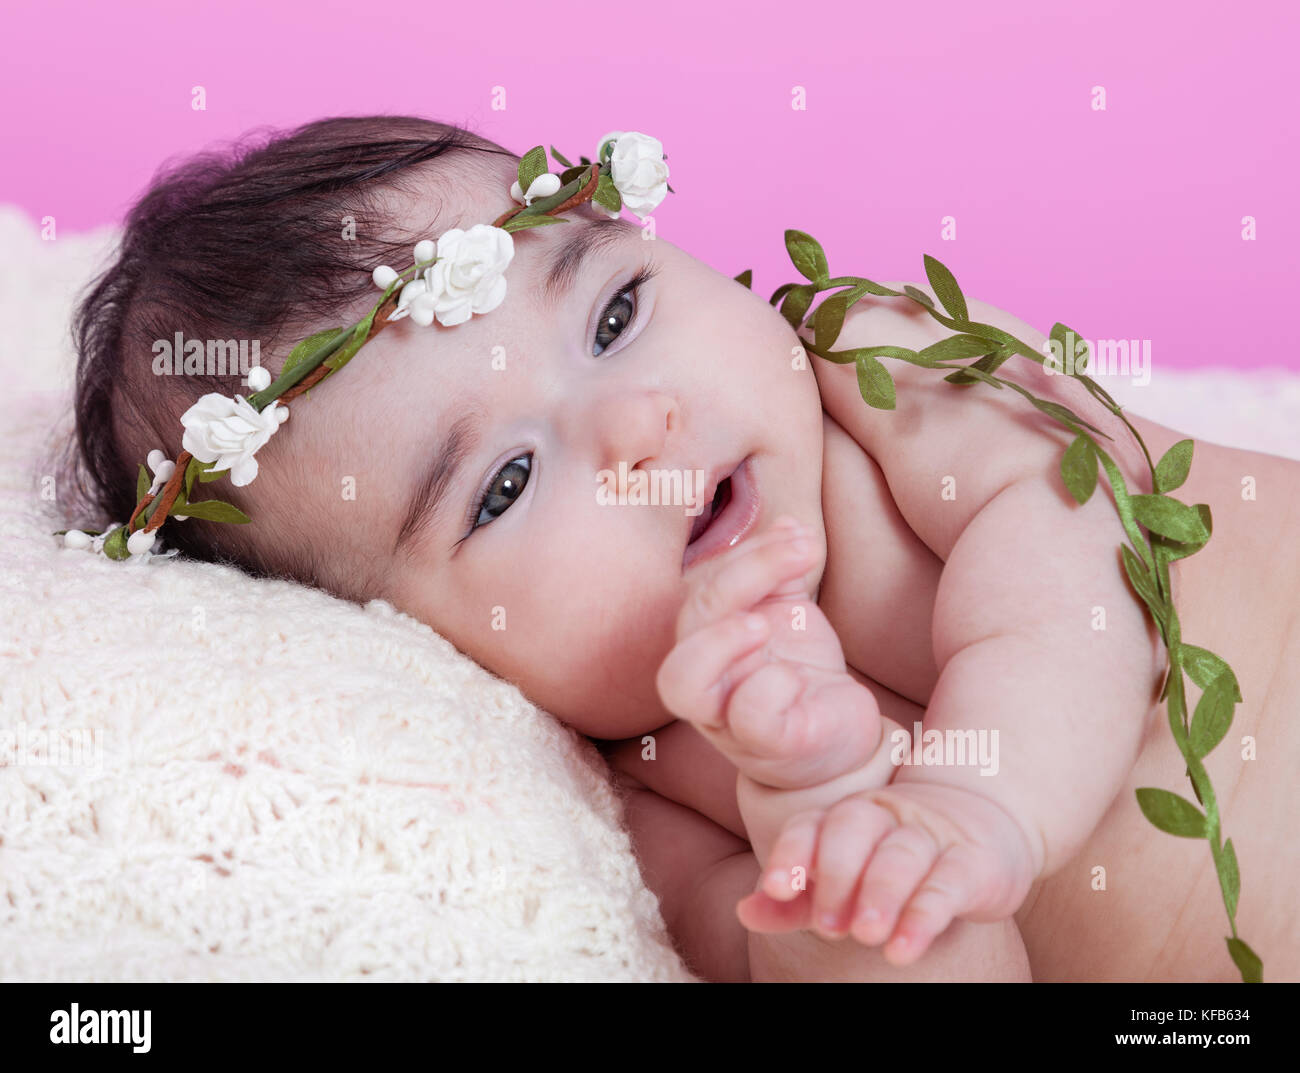 Mignon, joli, heureux, chubby portrait de fille de bébé, nu ou nu, sur une couverture moelleuse portant un bandeau de couronne ou de headaddress floral. Recherche. Quatre lun Banque D'Images